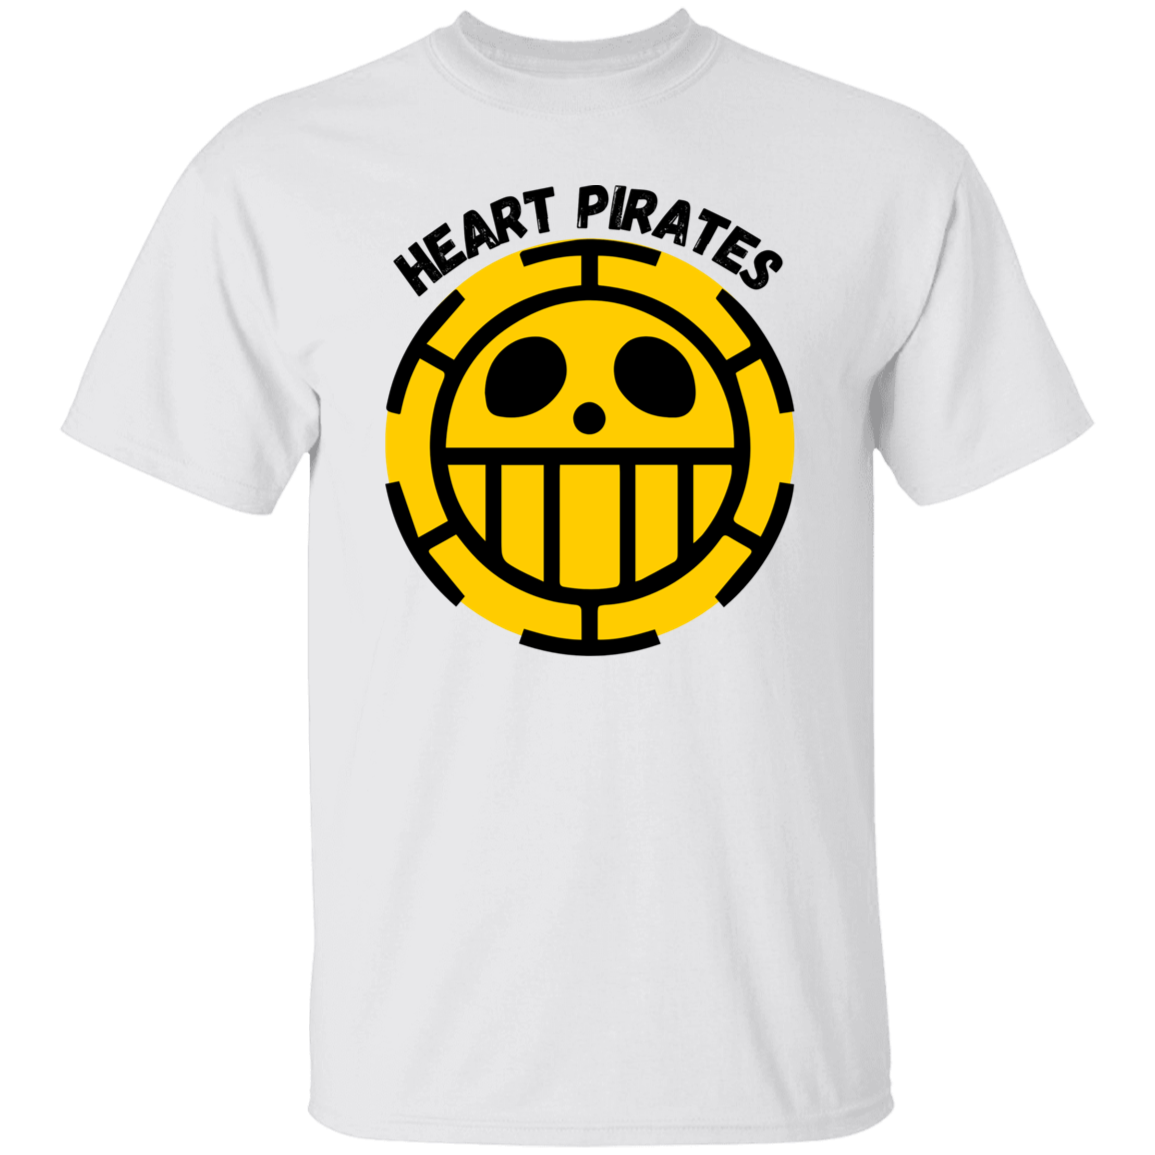 Heart Pirates - Men's T-Shirt